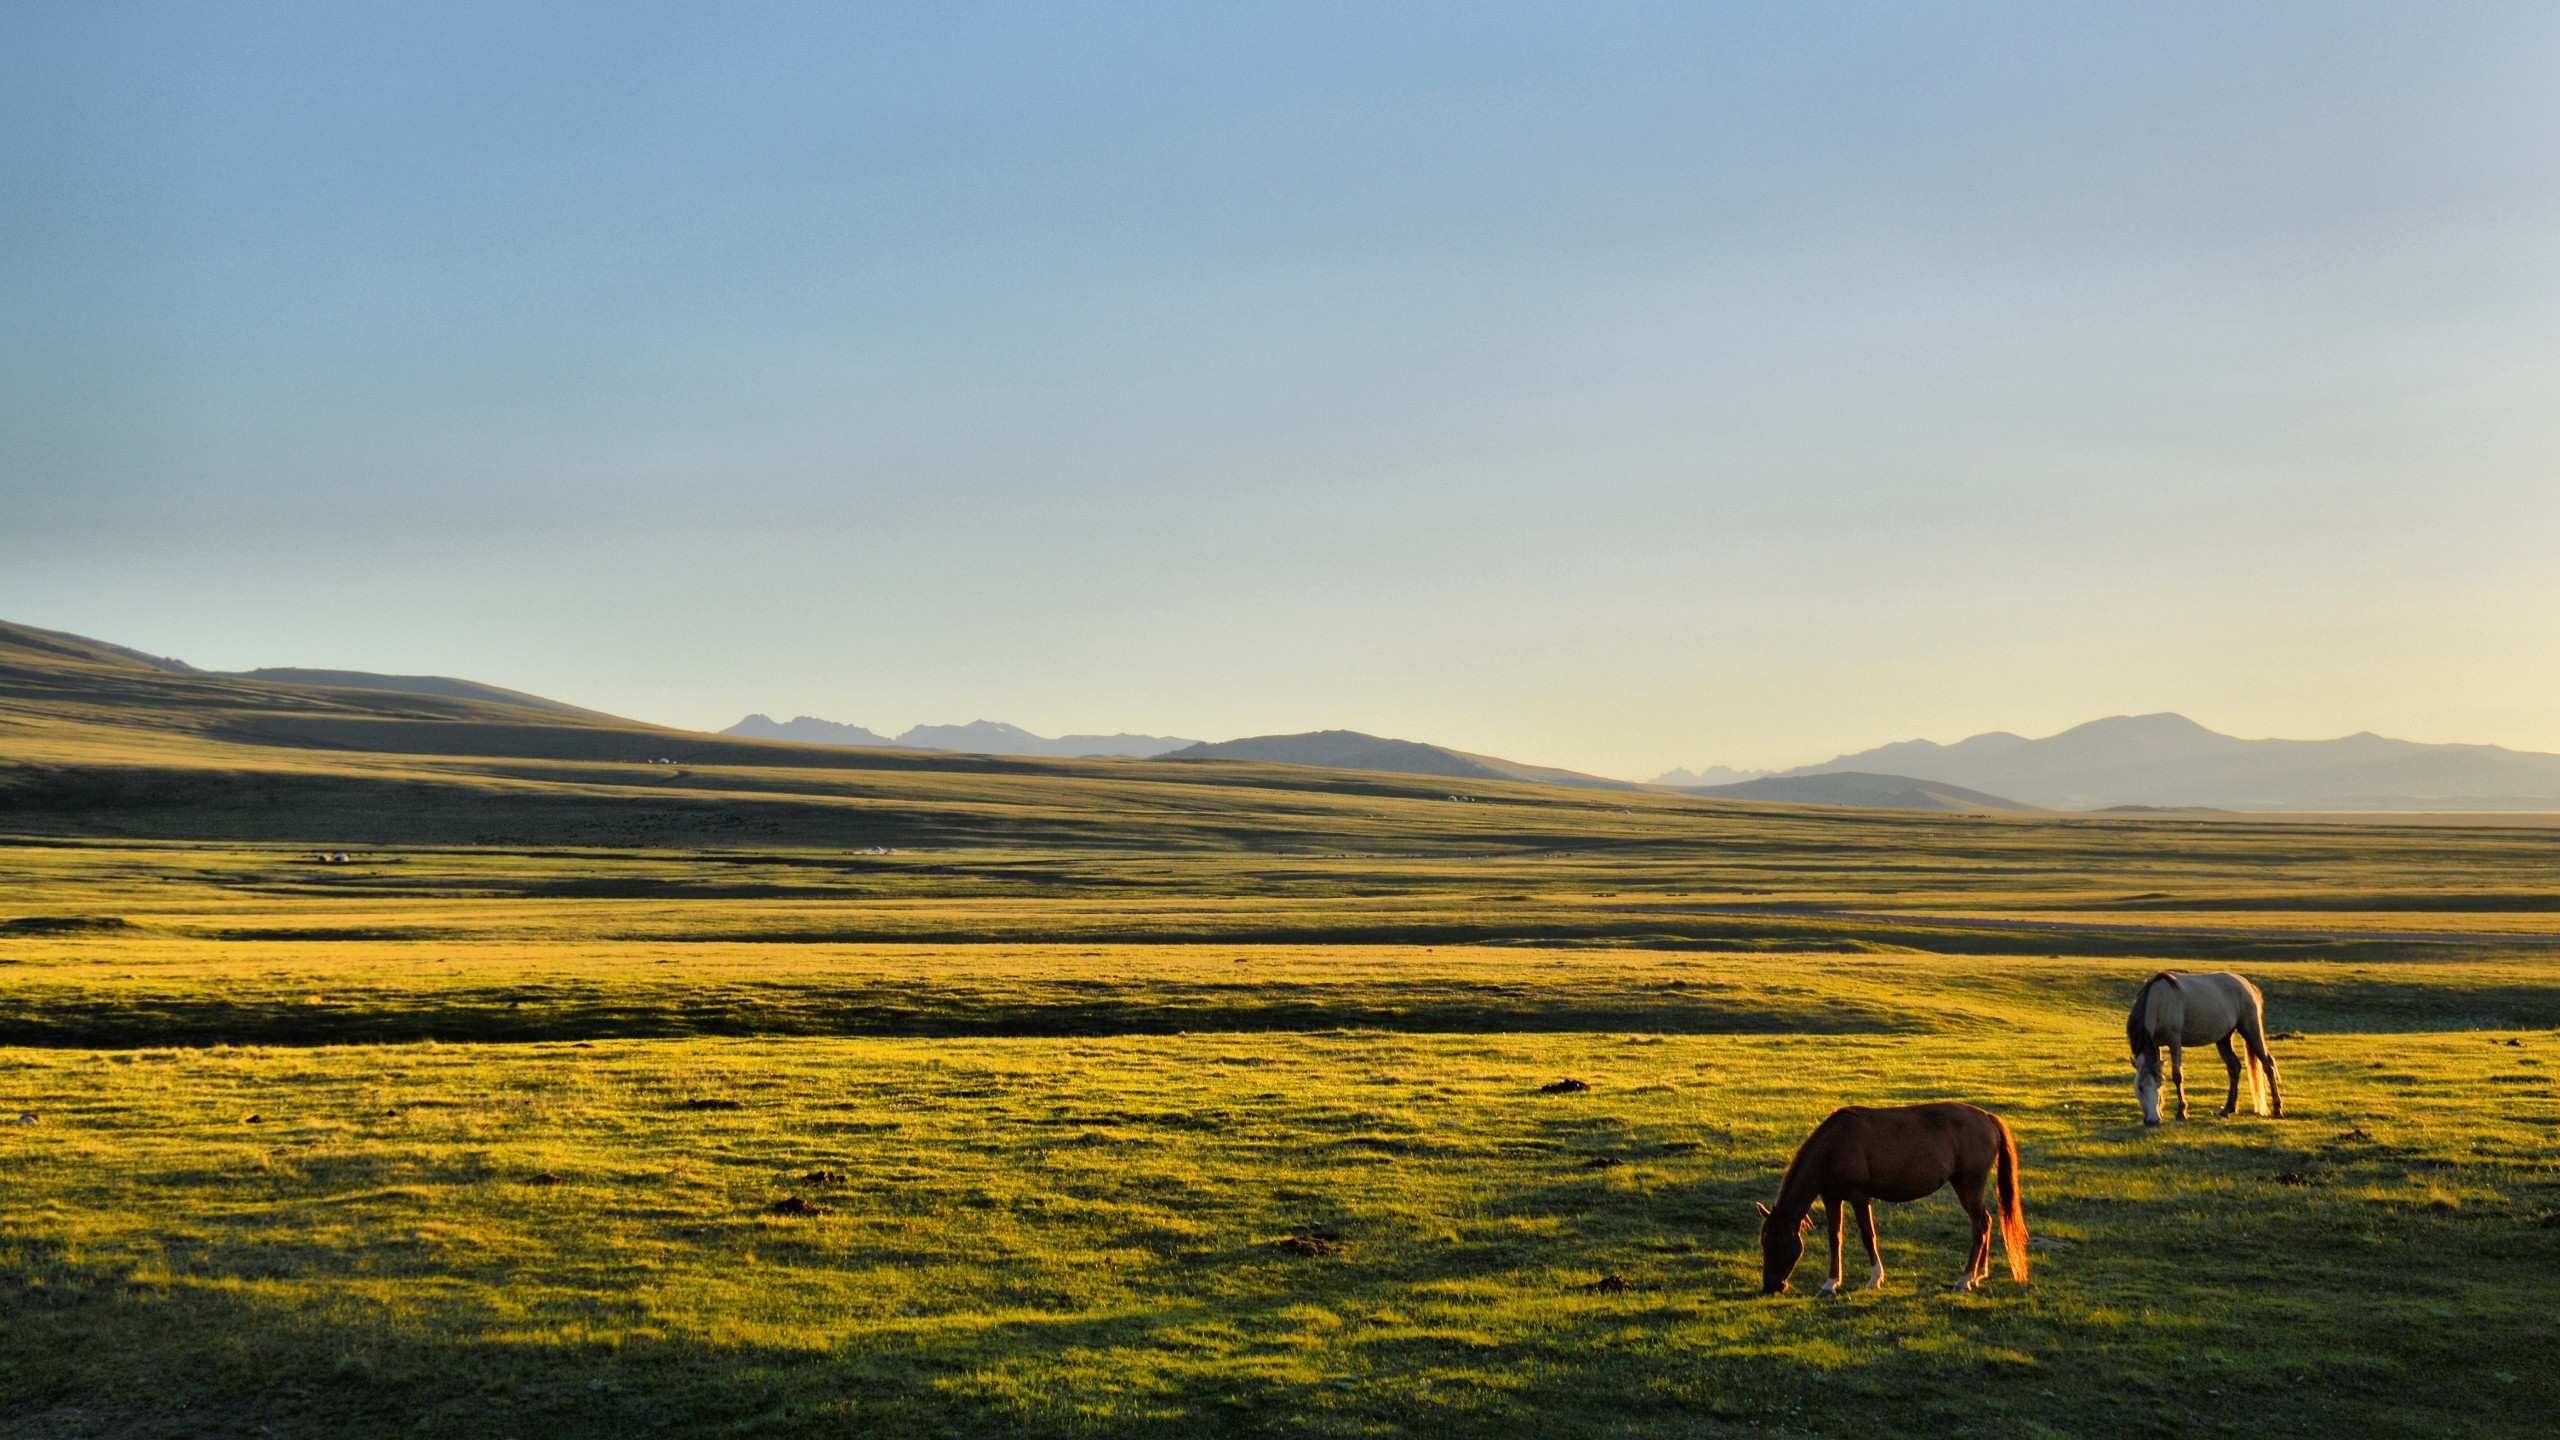 General 2560x1440 horse Kyrgyzstan Song Kul plains grass sunlight calm landscape far view clear sky field animals mammals nature